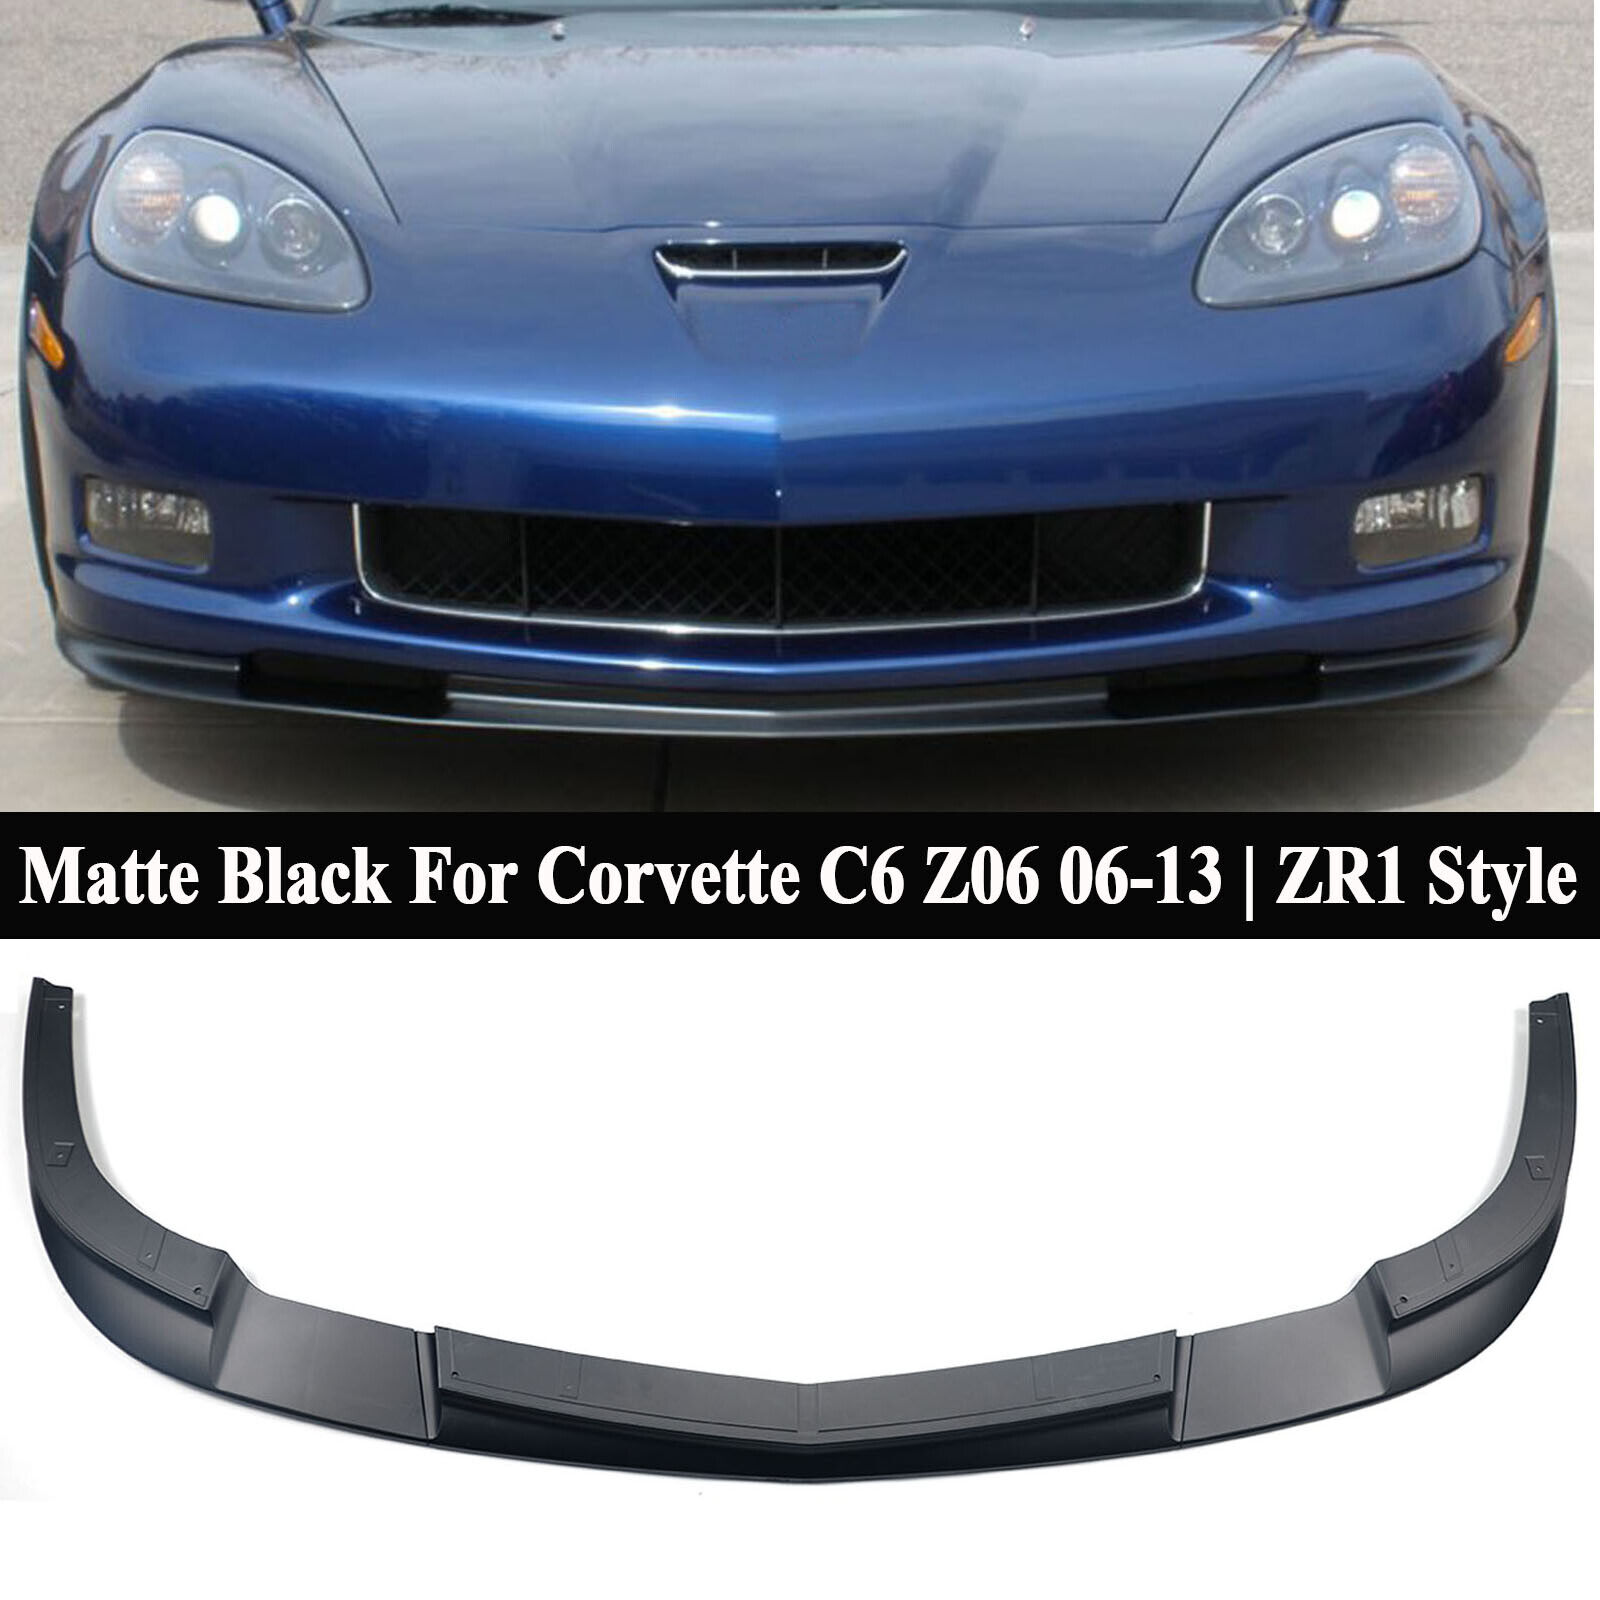 For Corvette C6 Z06 06-13 ZR1 Style Matte Blk Front Bumper Splitter Lip Spoiler